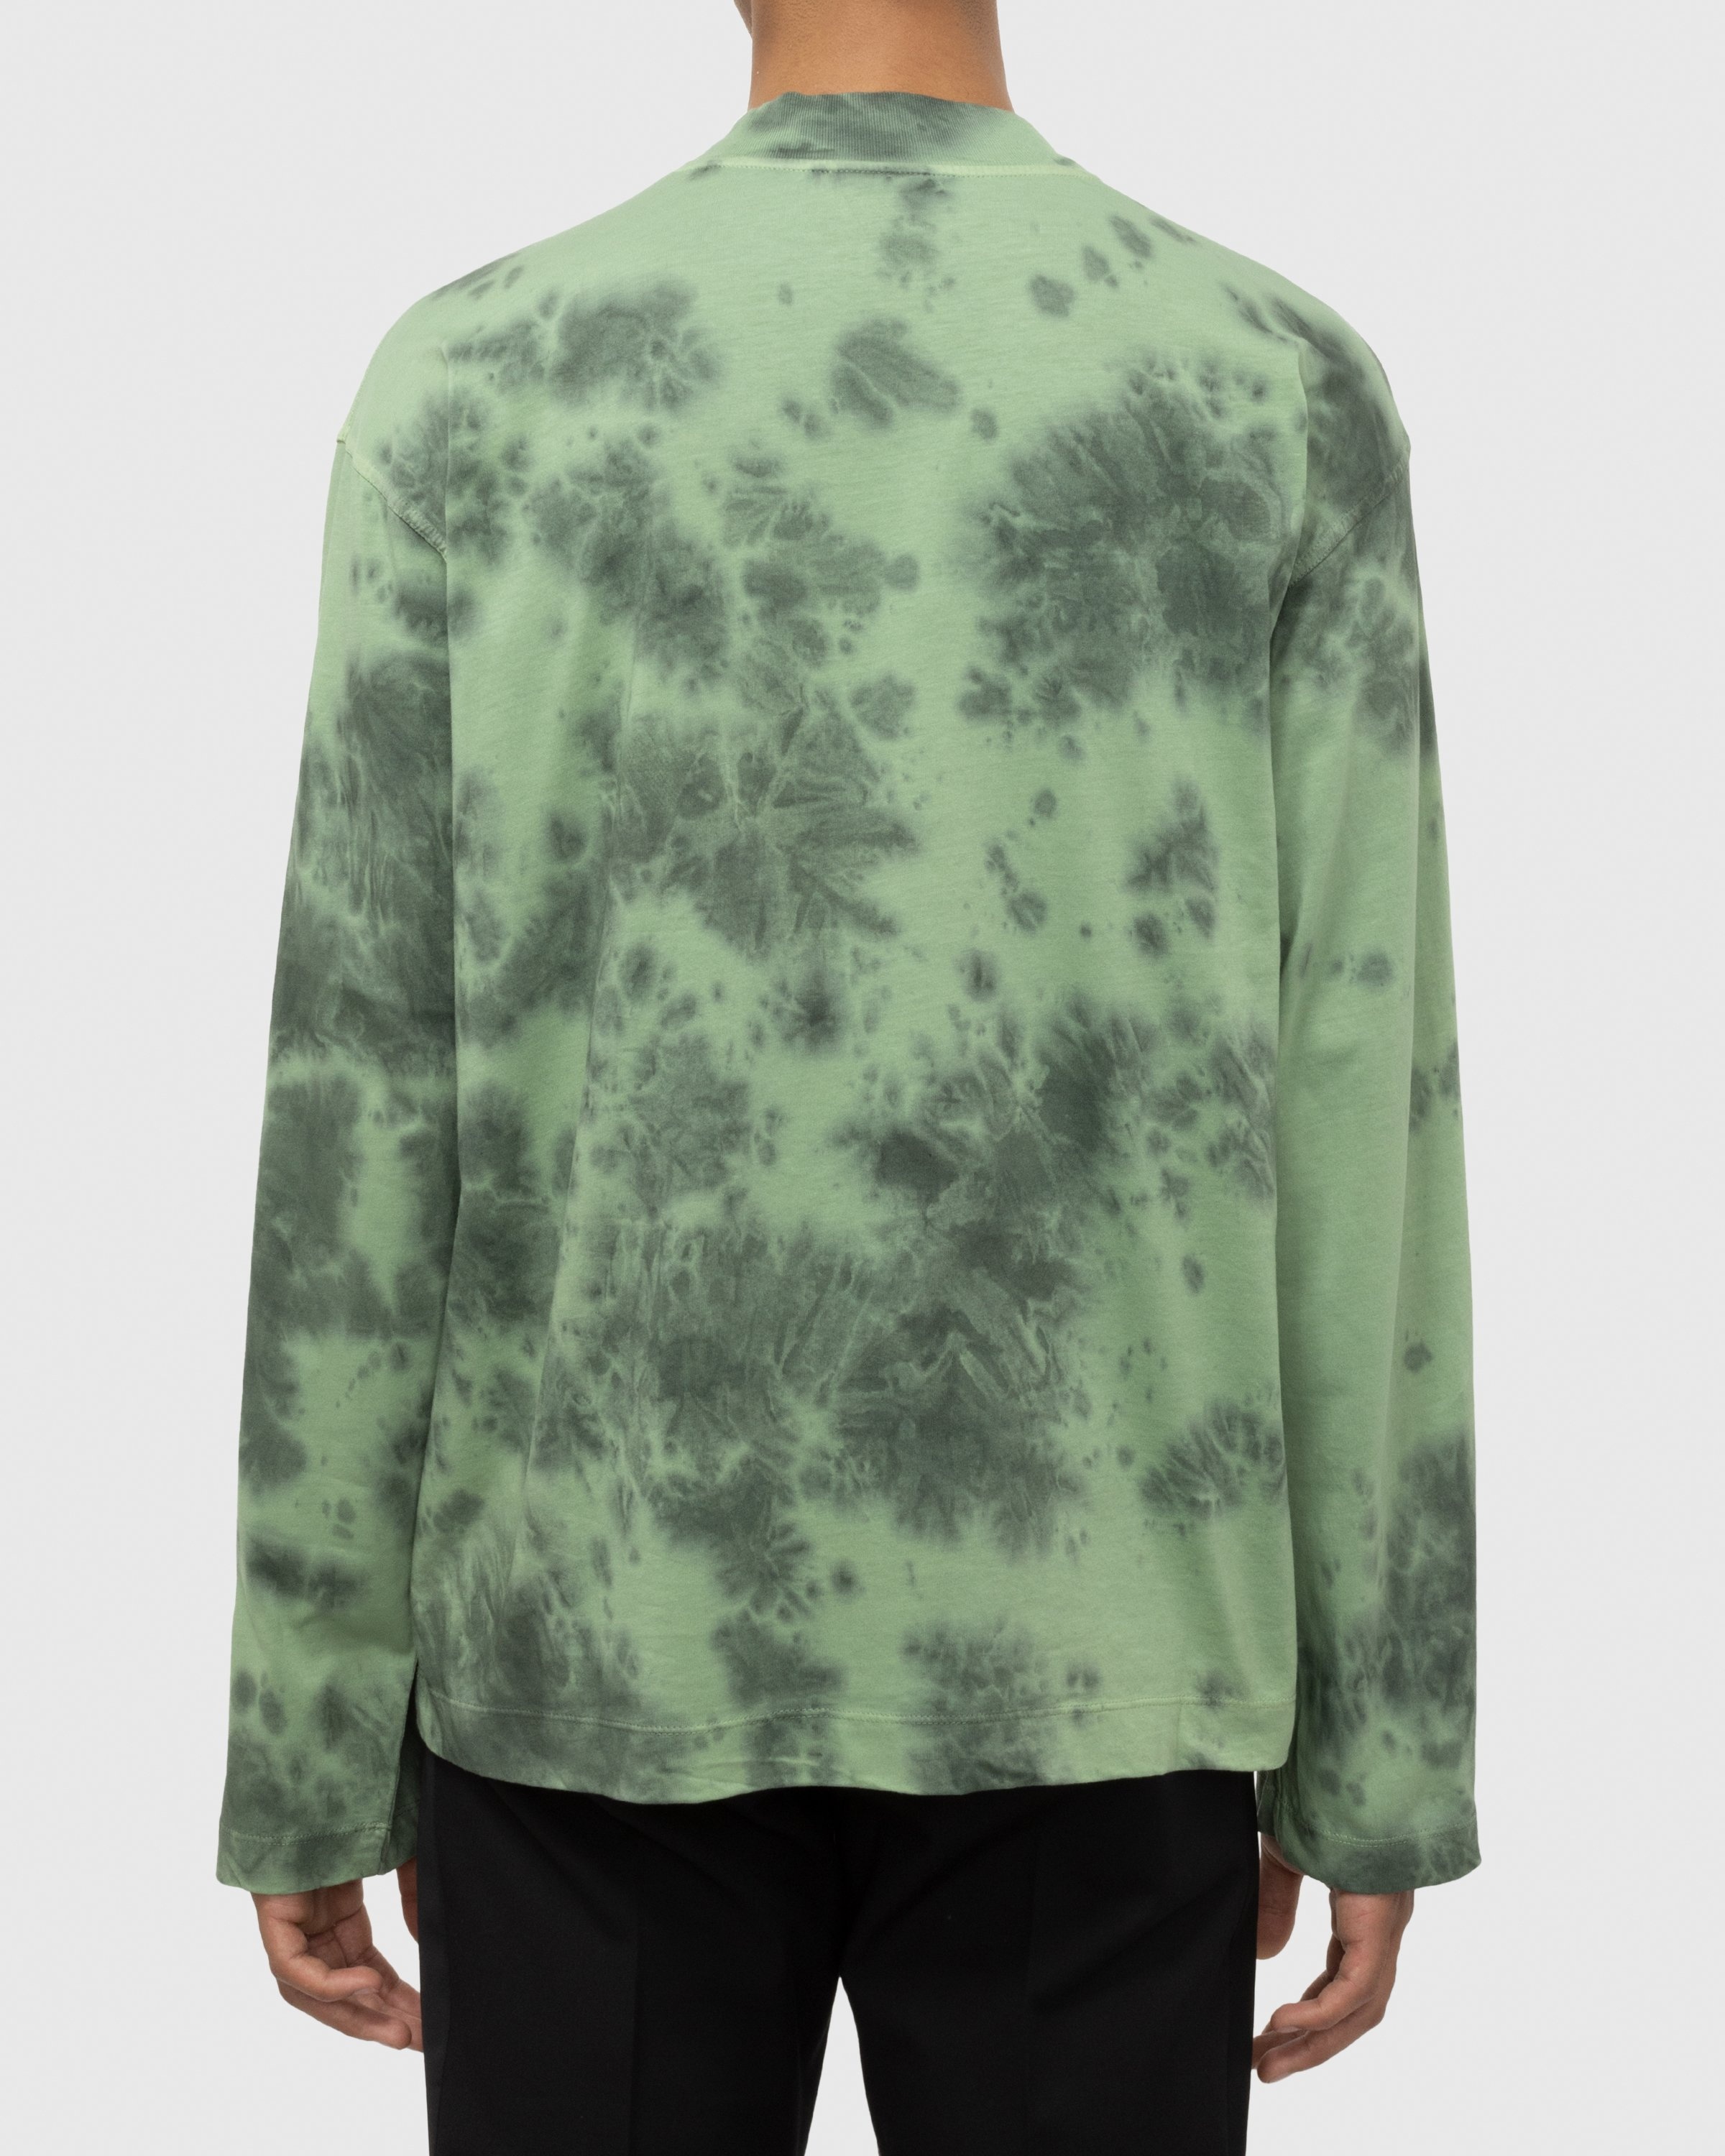 Dries van Noten – Heger T-Shirt Green - Longsleeve Shirts - Green - Image 4